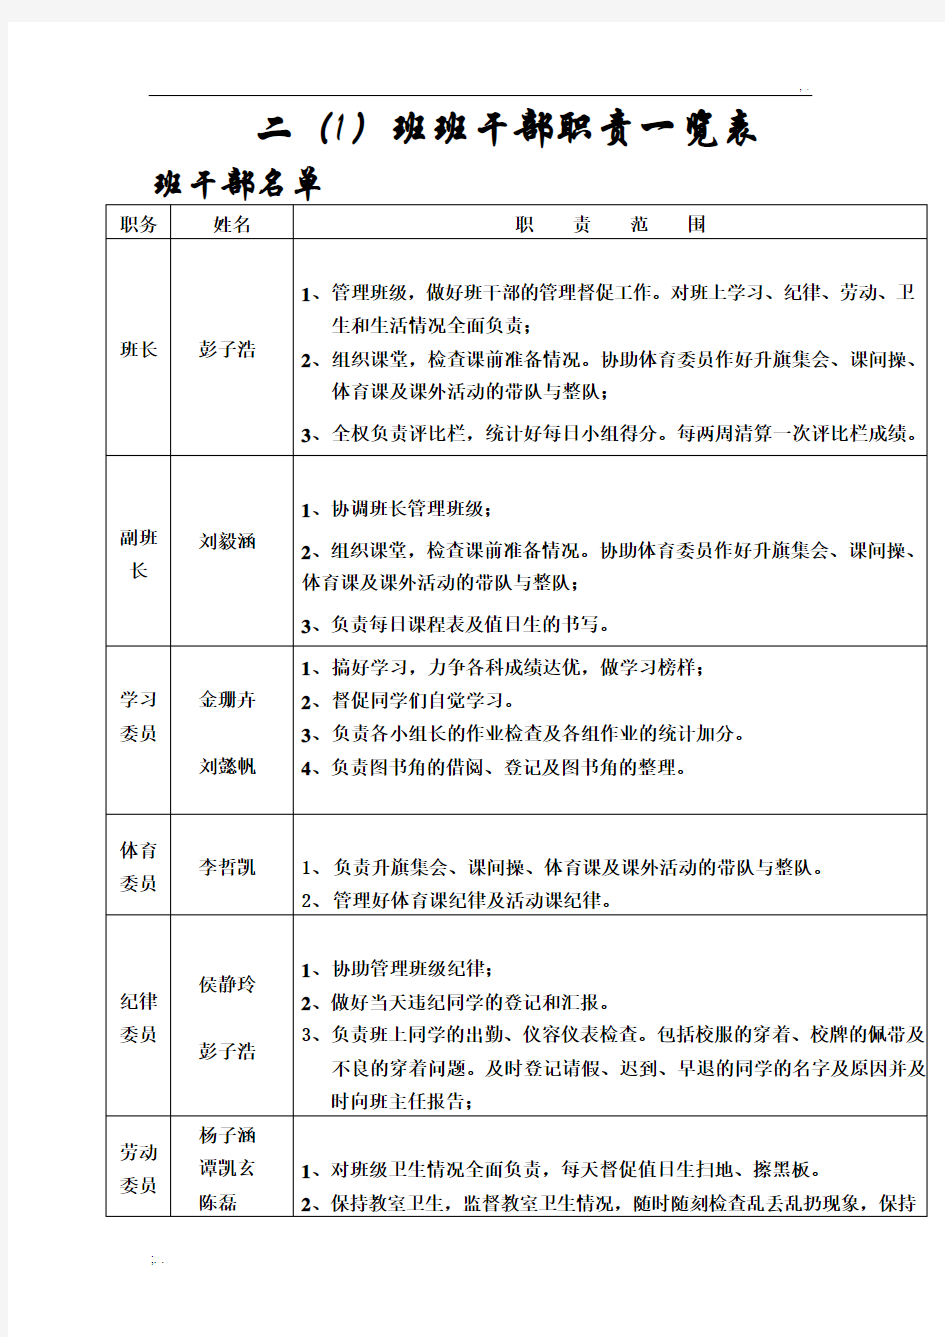 班干部名单及职责一览表 (2)